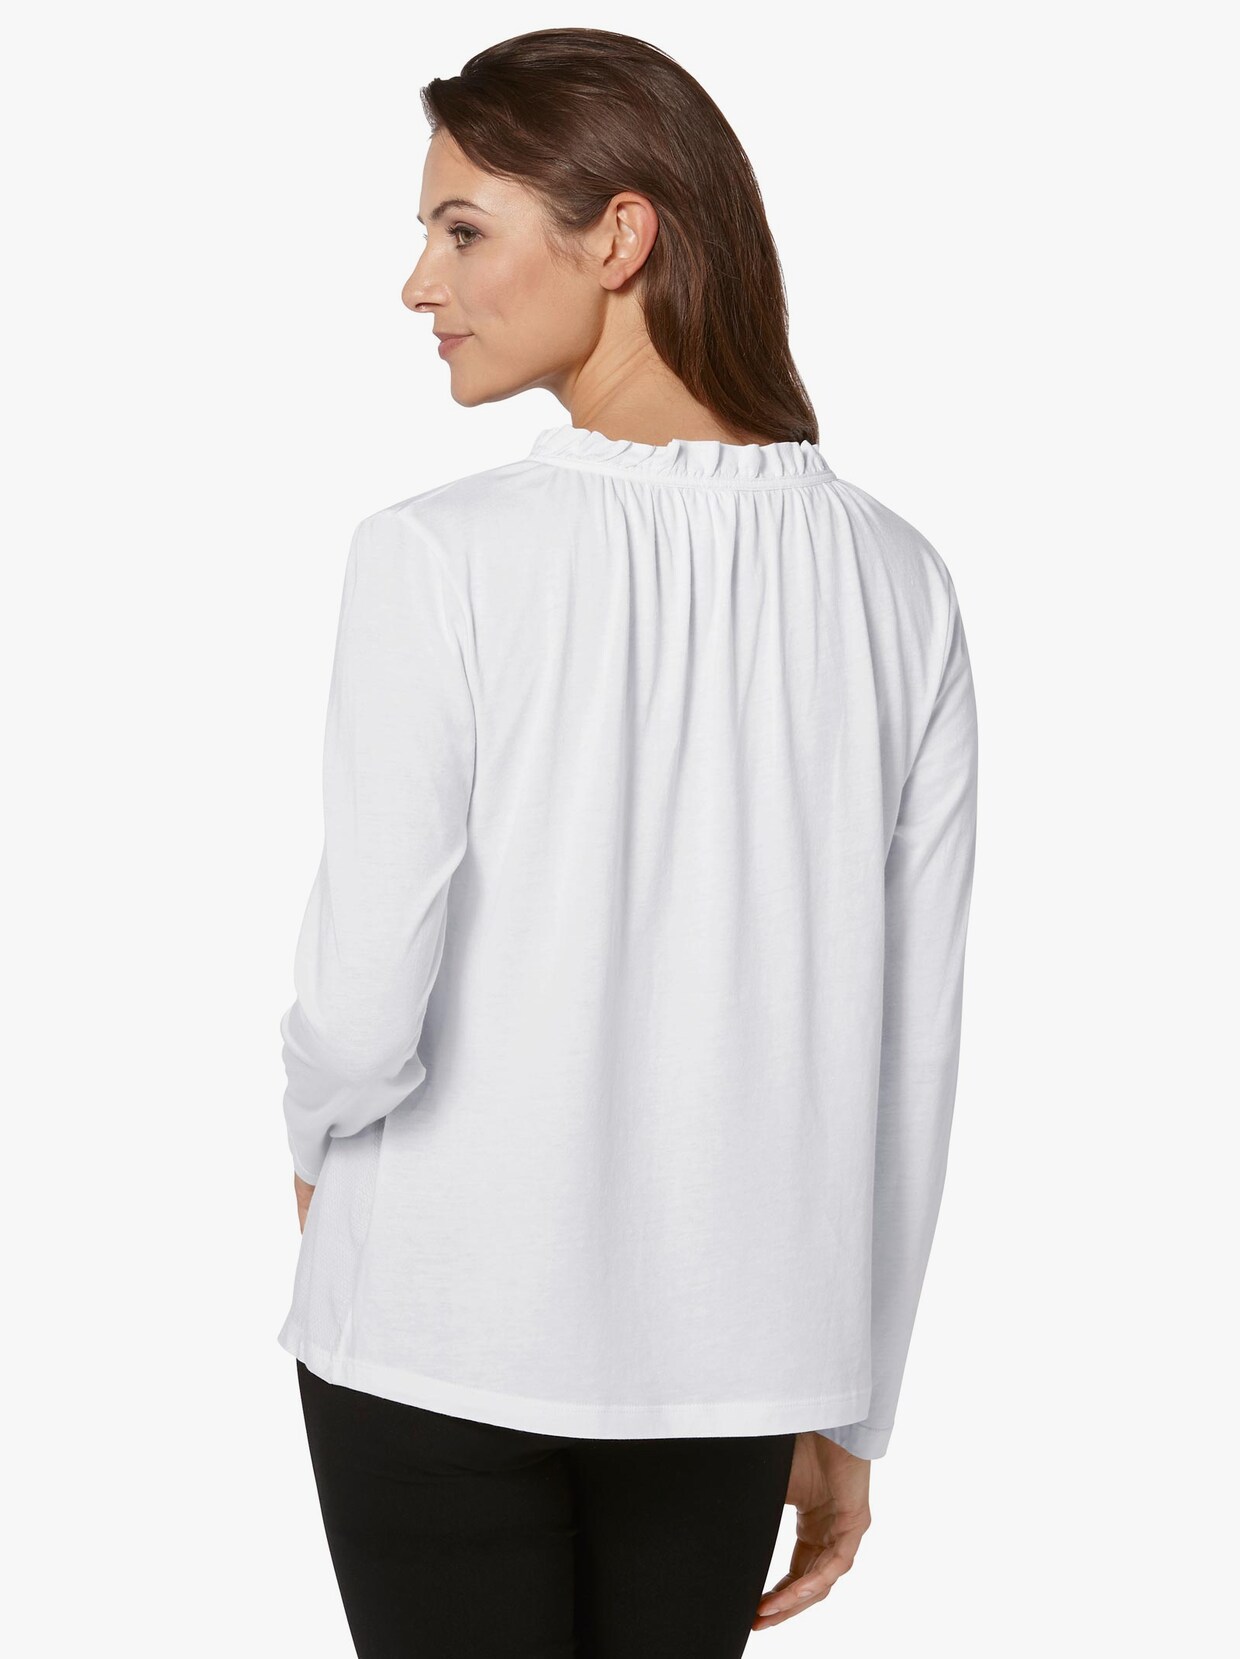 Tričko - vlněná bílá